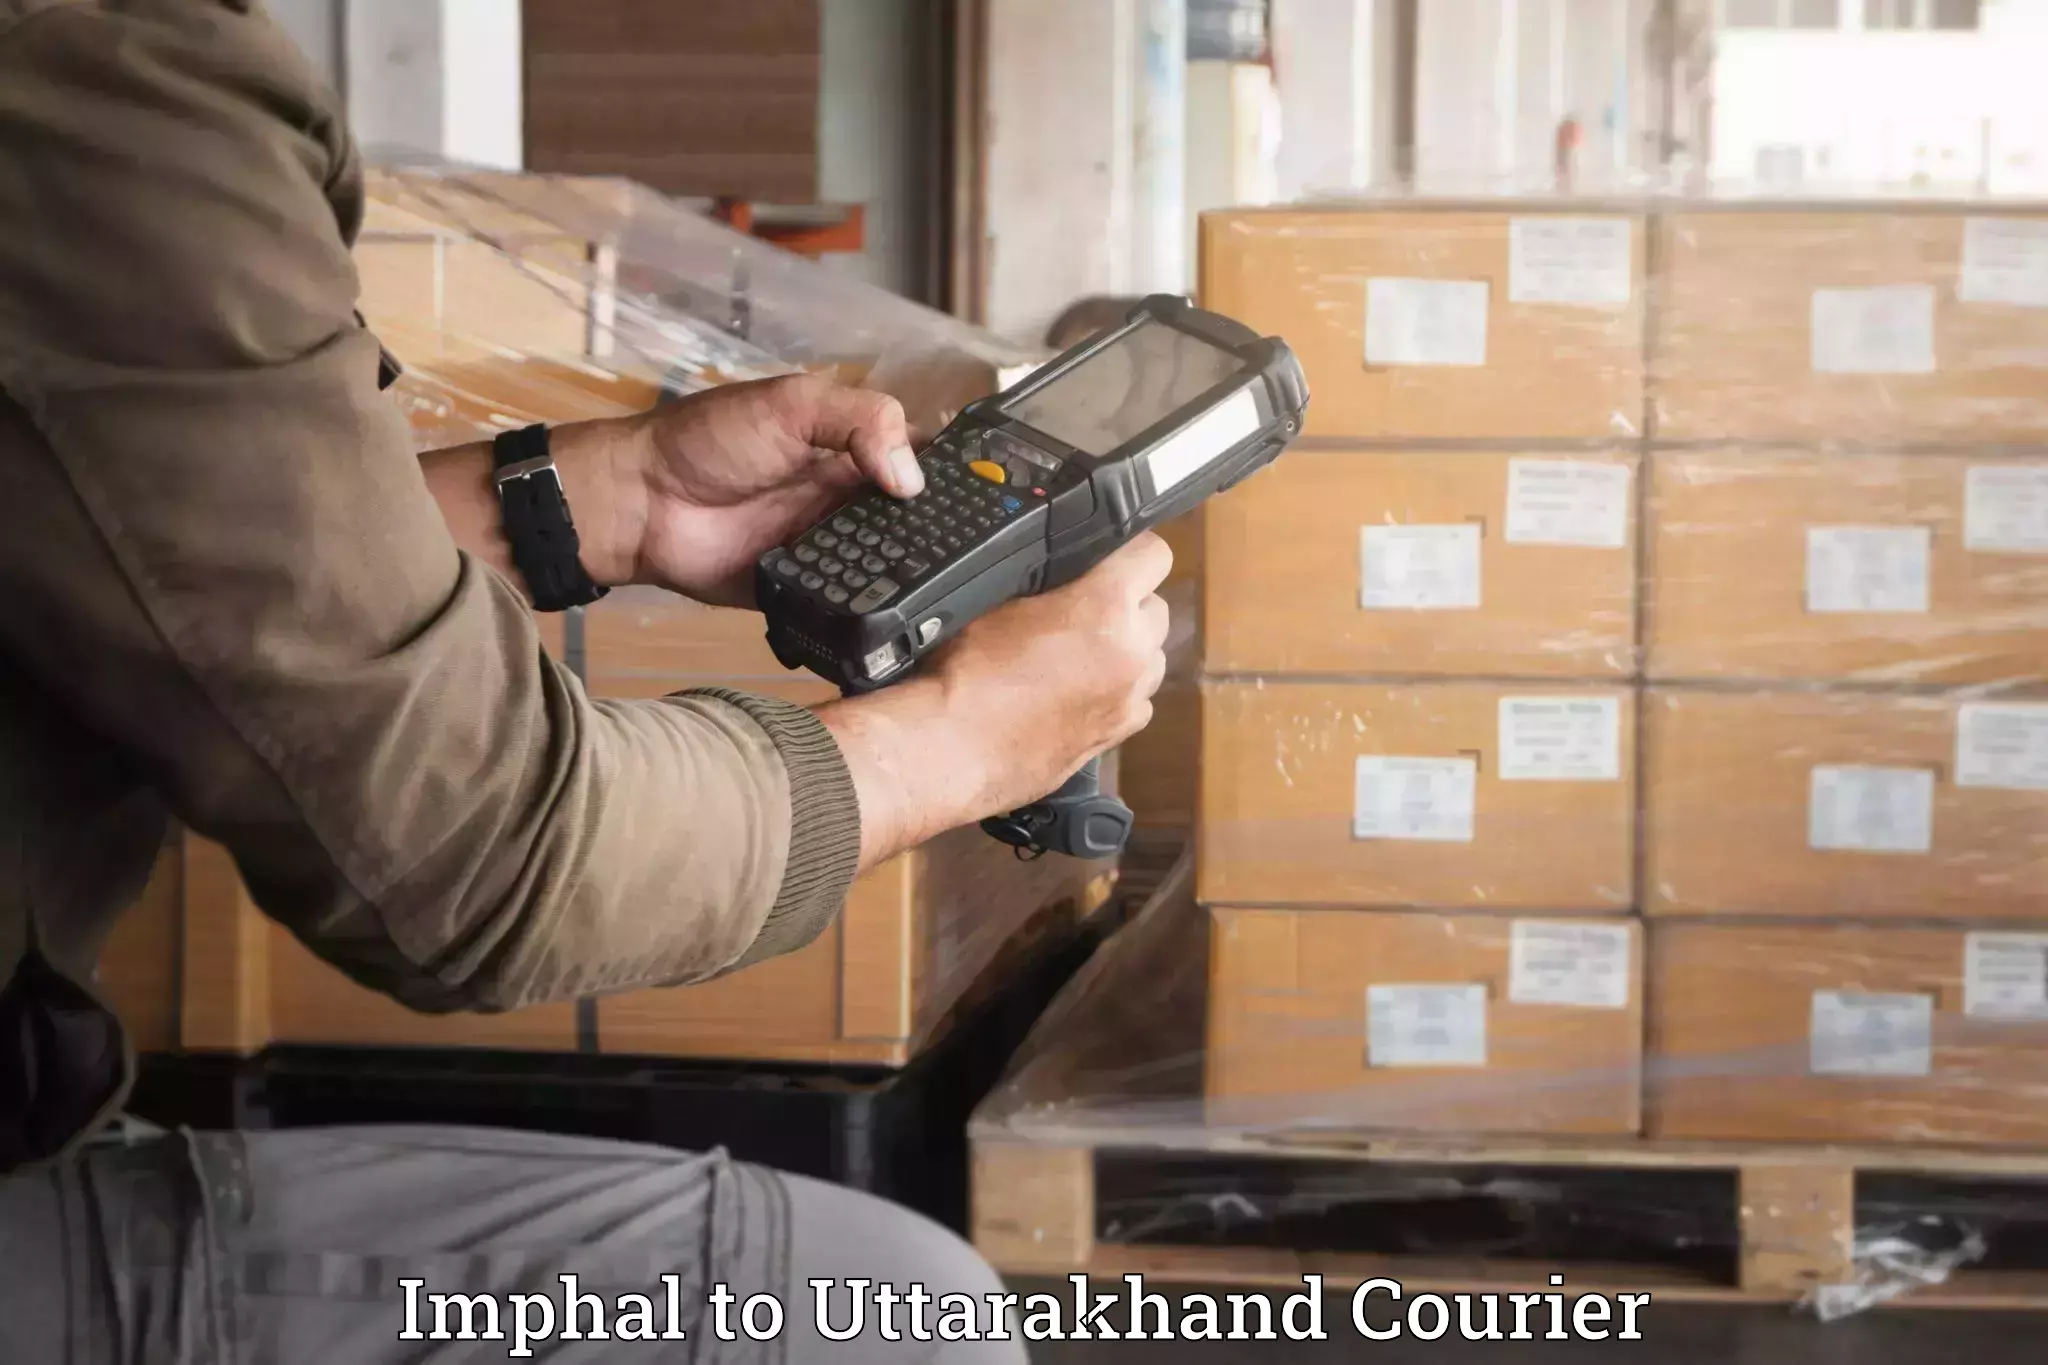 Luggage dispatch service Imphal to Kotdwara